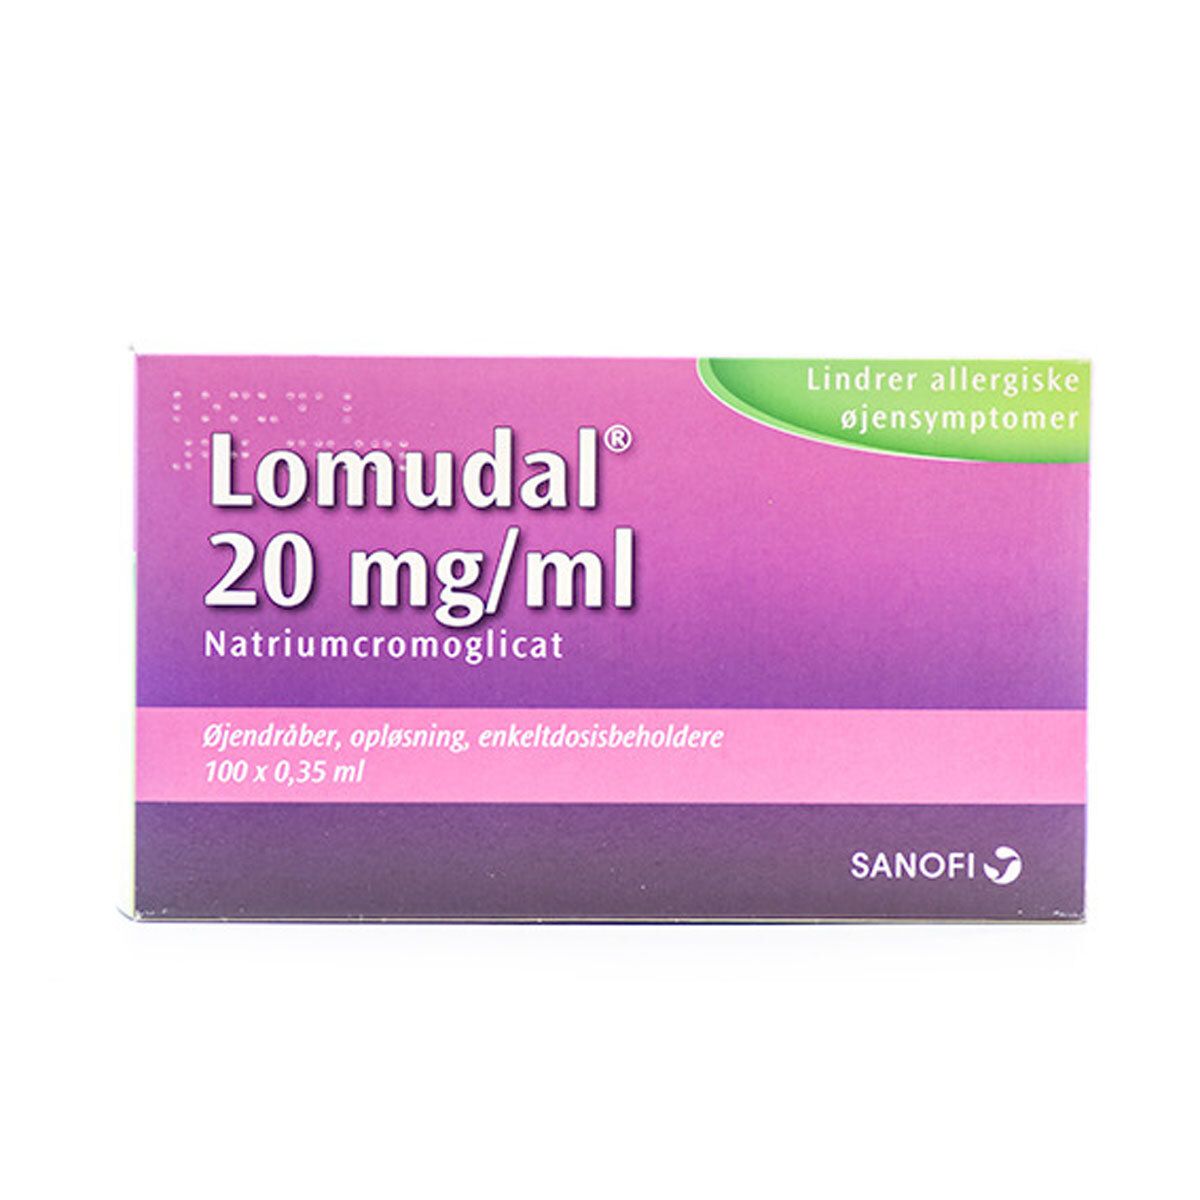 Lomudal Enkeltdosisbeholder mg/ml Med24.dk